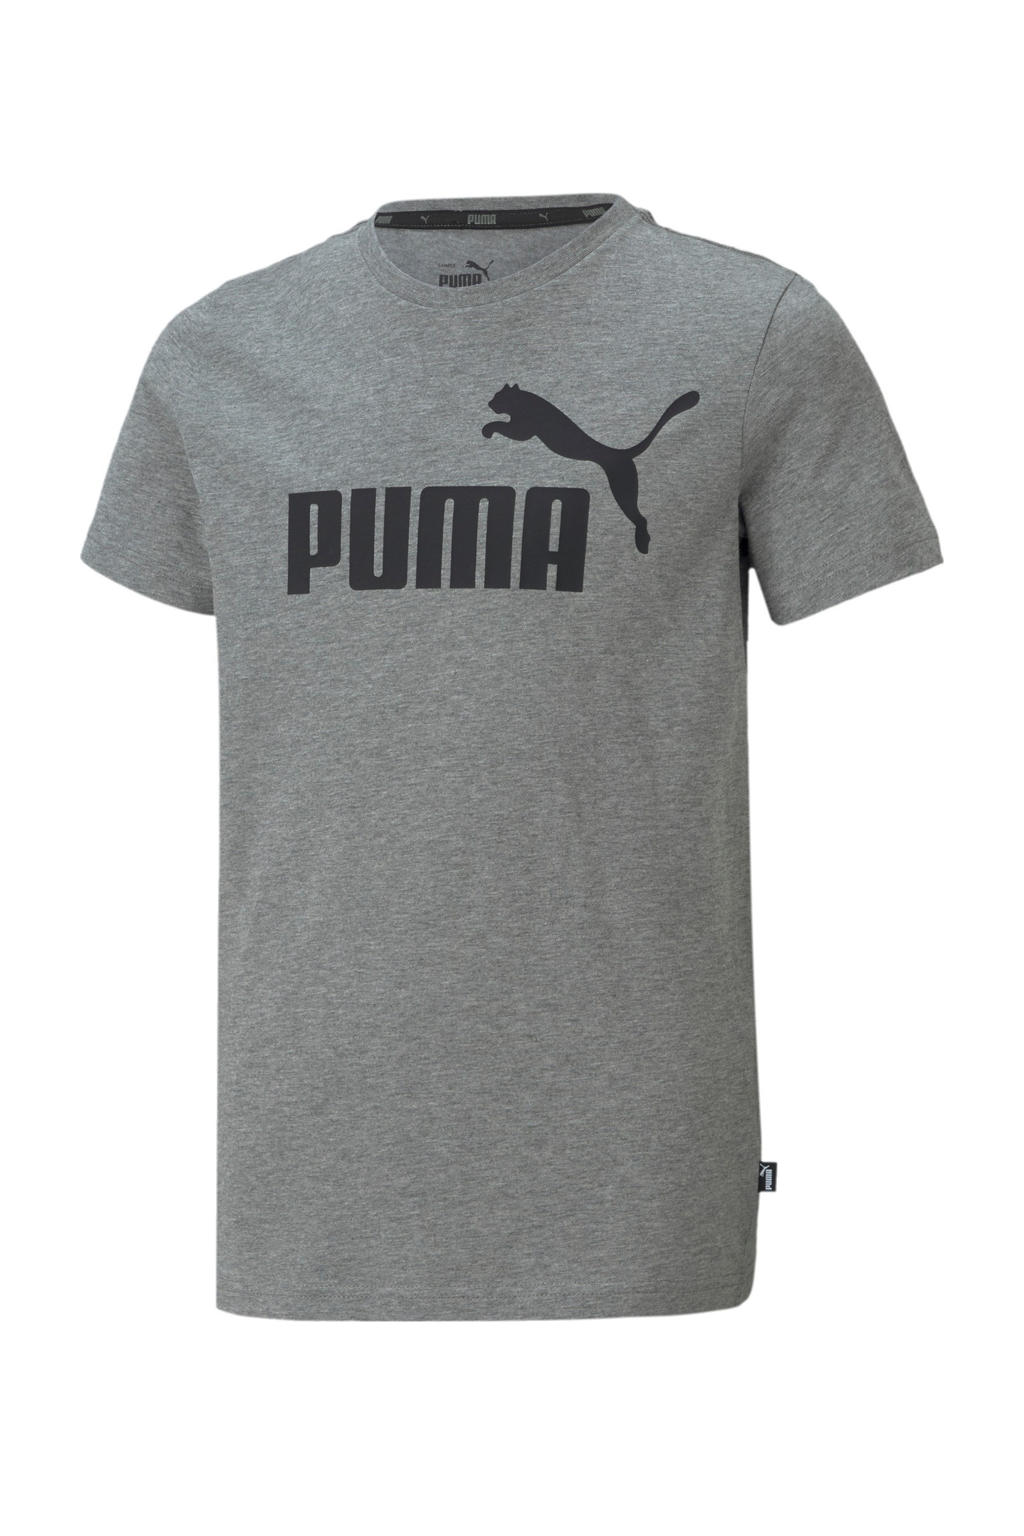 Grijs en zwarte jongens Puma T-shirt van duurzaam katoen met logo dessin, korte mouwen en ronde hals